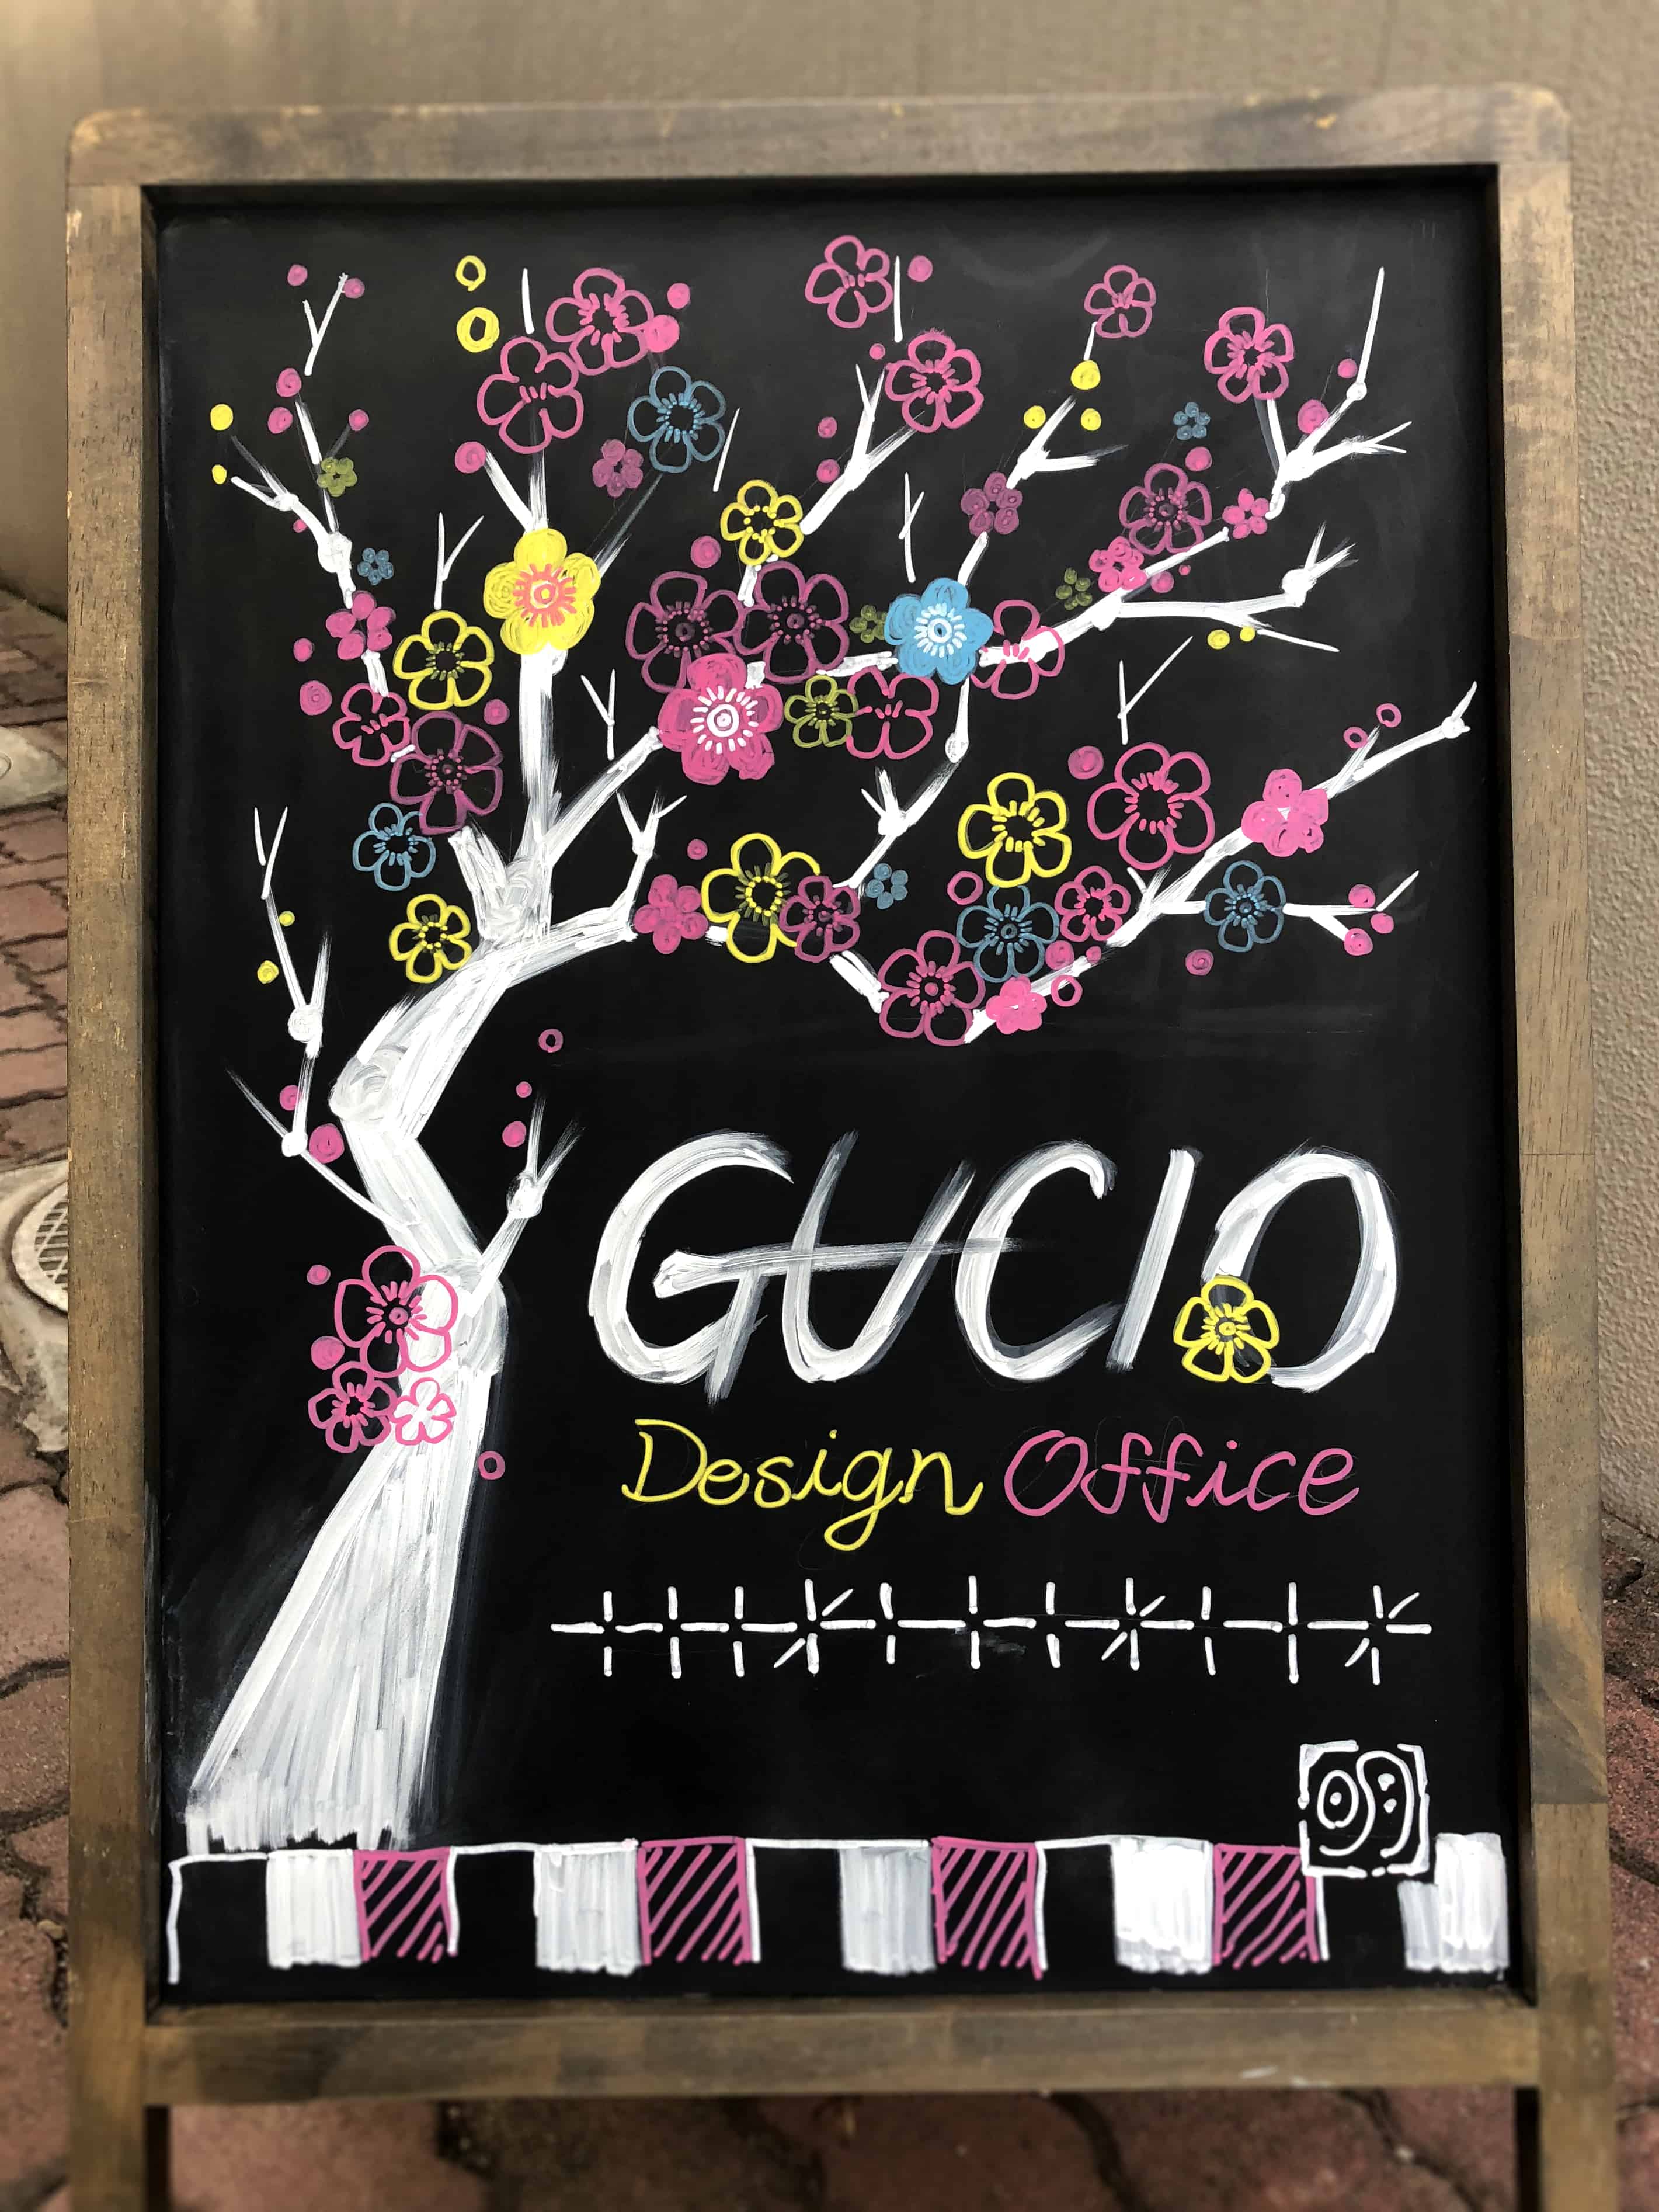 立て看板更新 梅 あなたの 伝えたい を叶える会社 東京のwebコンサルティング Gucio Co あなたの 伝えたい を叶える会社 東京のwebコンサルティング Gucio Co